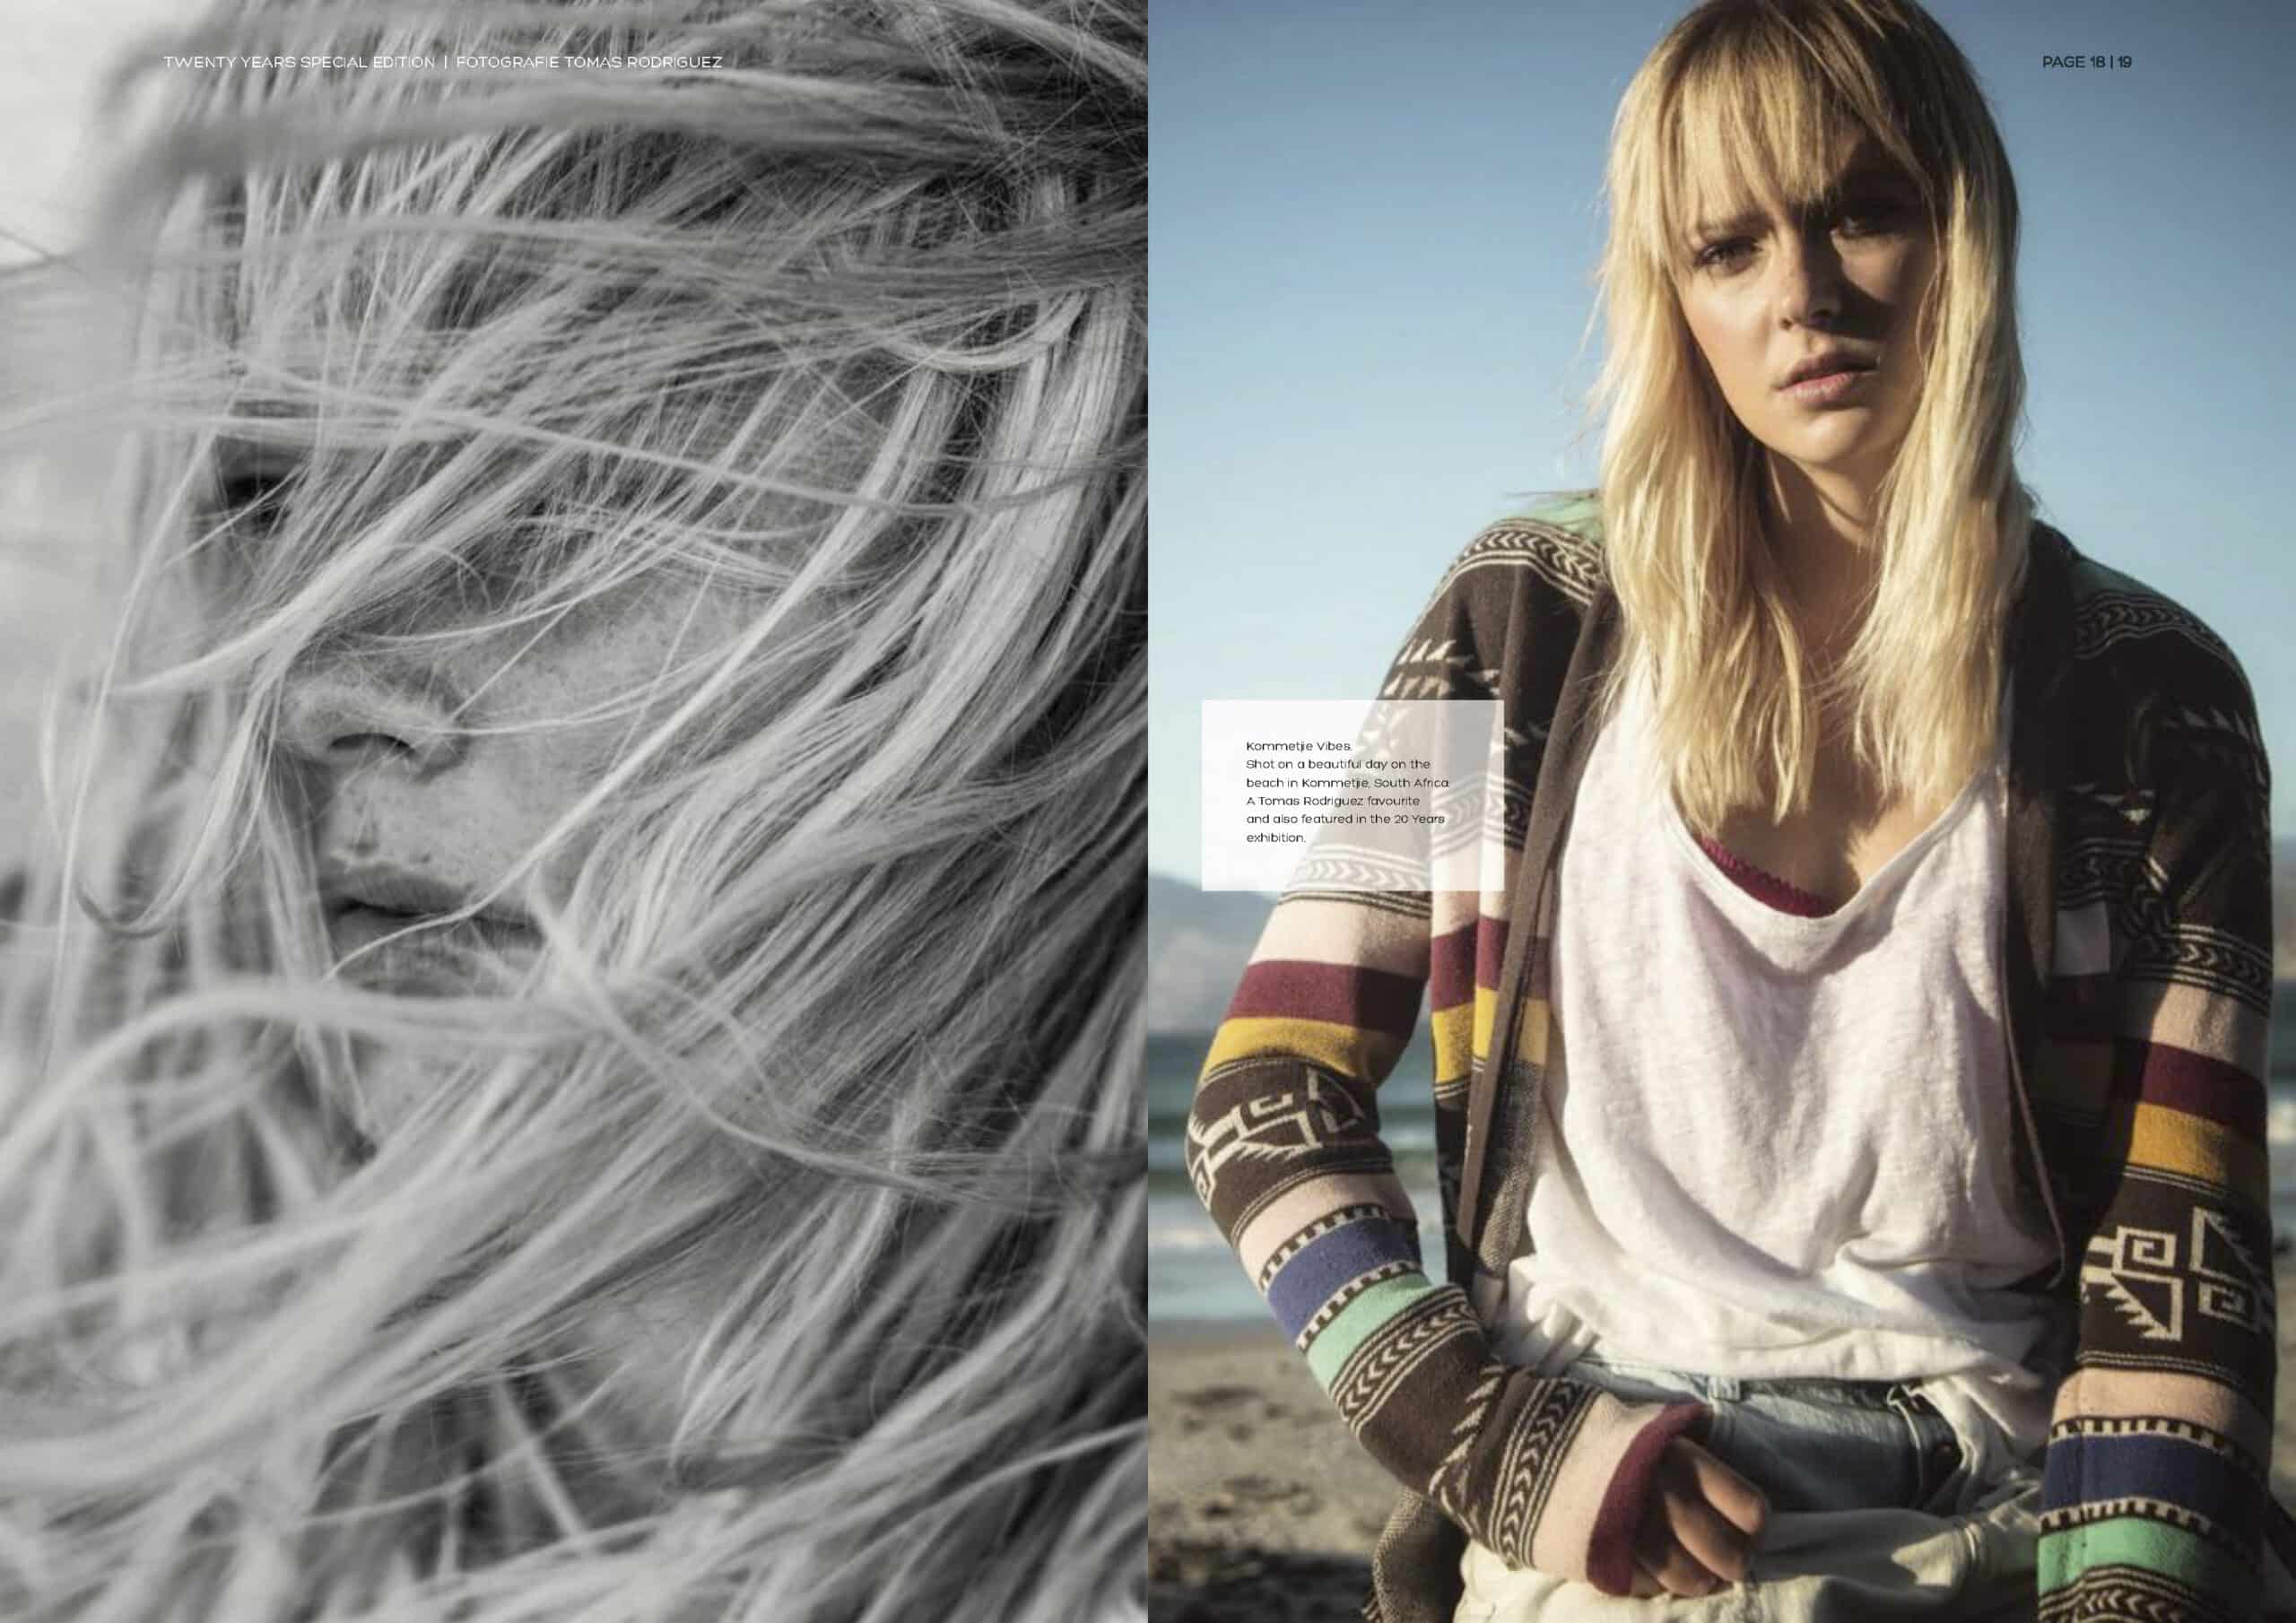 Eine Zeitschriftenstrecke mit zwei Bildern einer Frau: Links eine Nahaufnahme ihres Gesichts mit vom Wind zerzausten Haaren in Monochrom, und rechts ist sie in Farbe zu sehen, leger gekleidet in einem mehrlagigen, gemusterten Outfit an einem Strand. © Fotografie Tomas Rodriguez